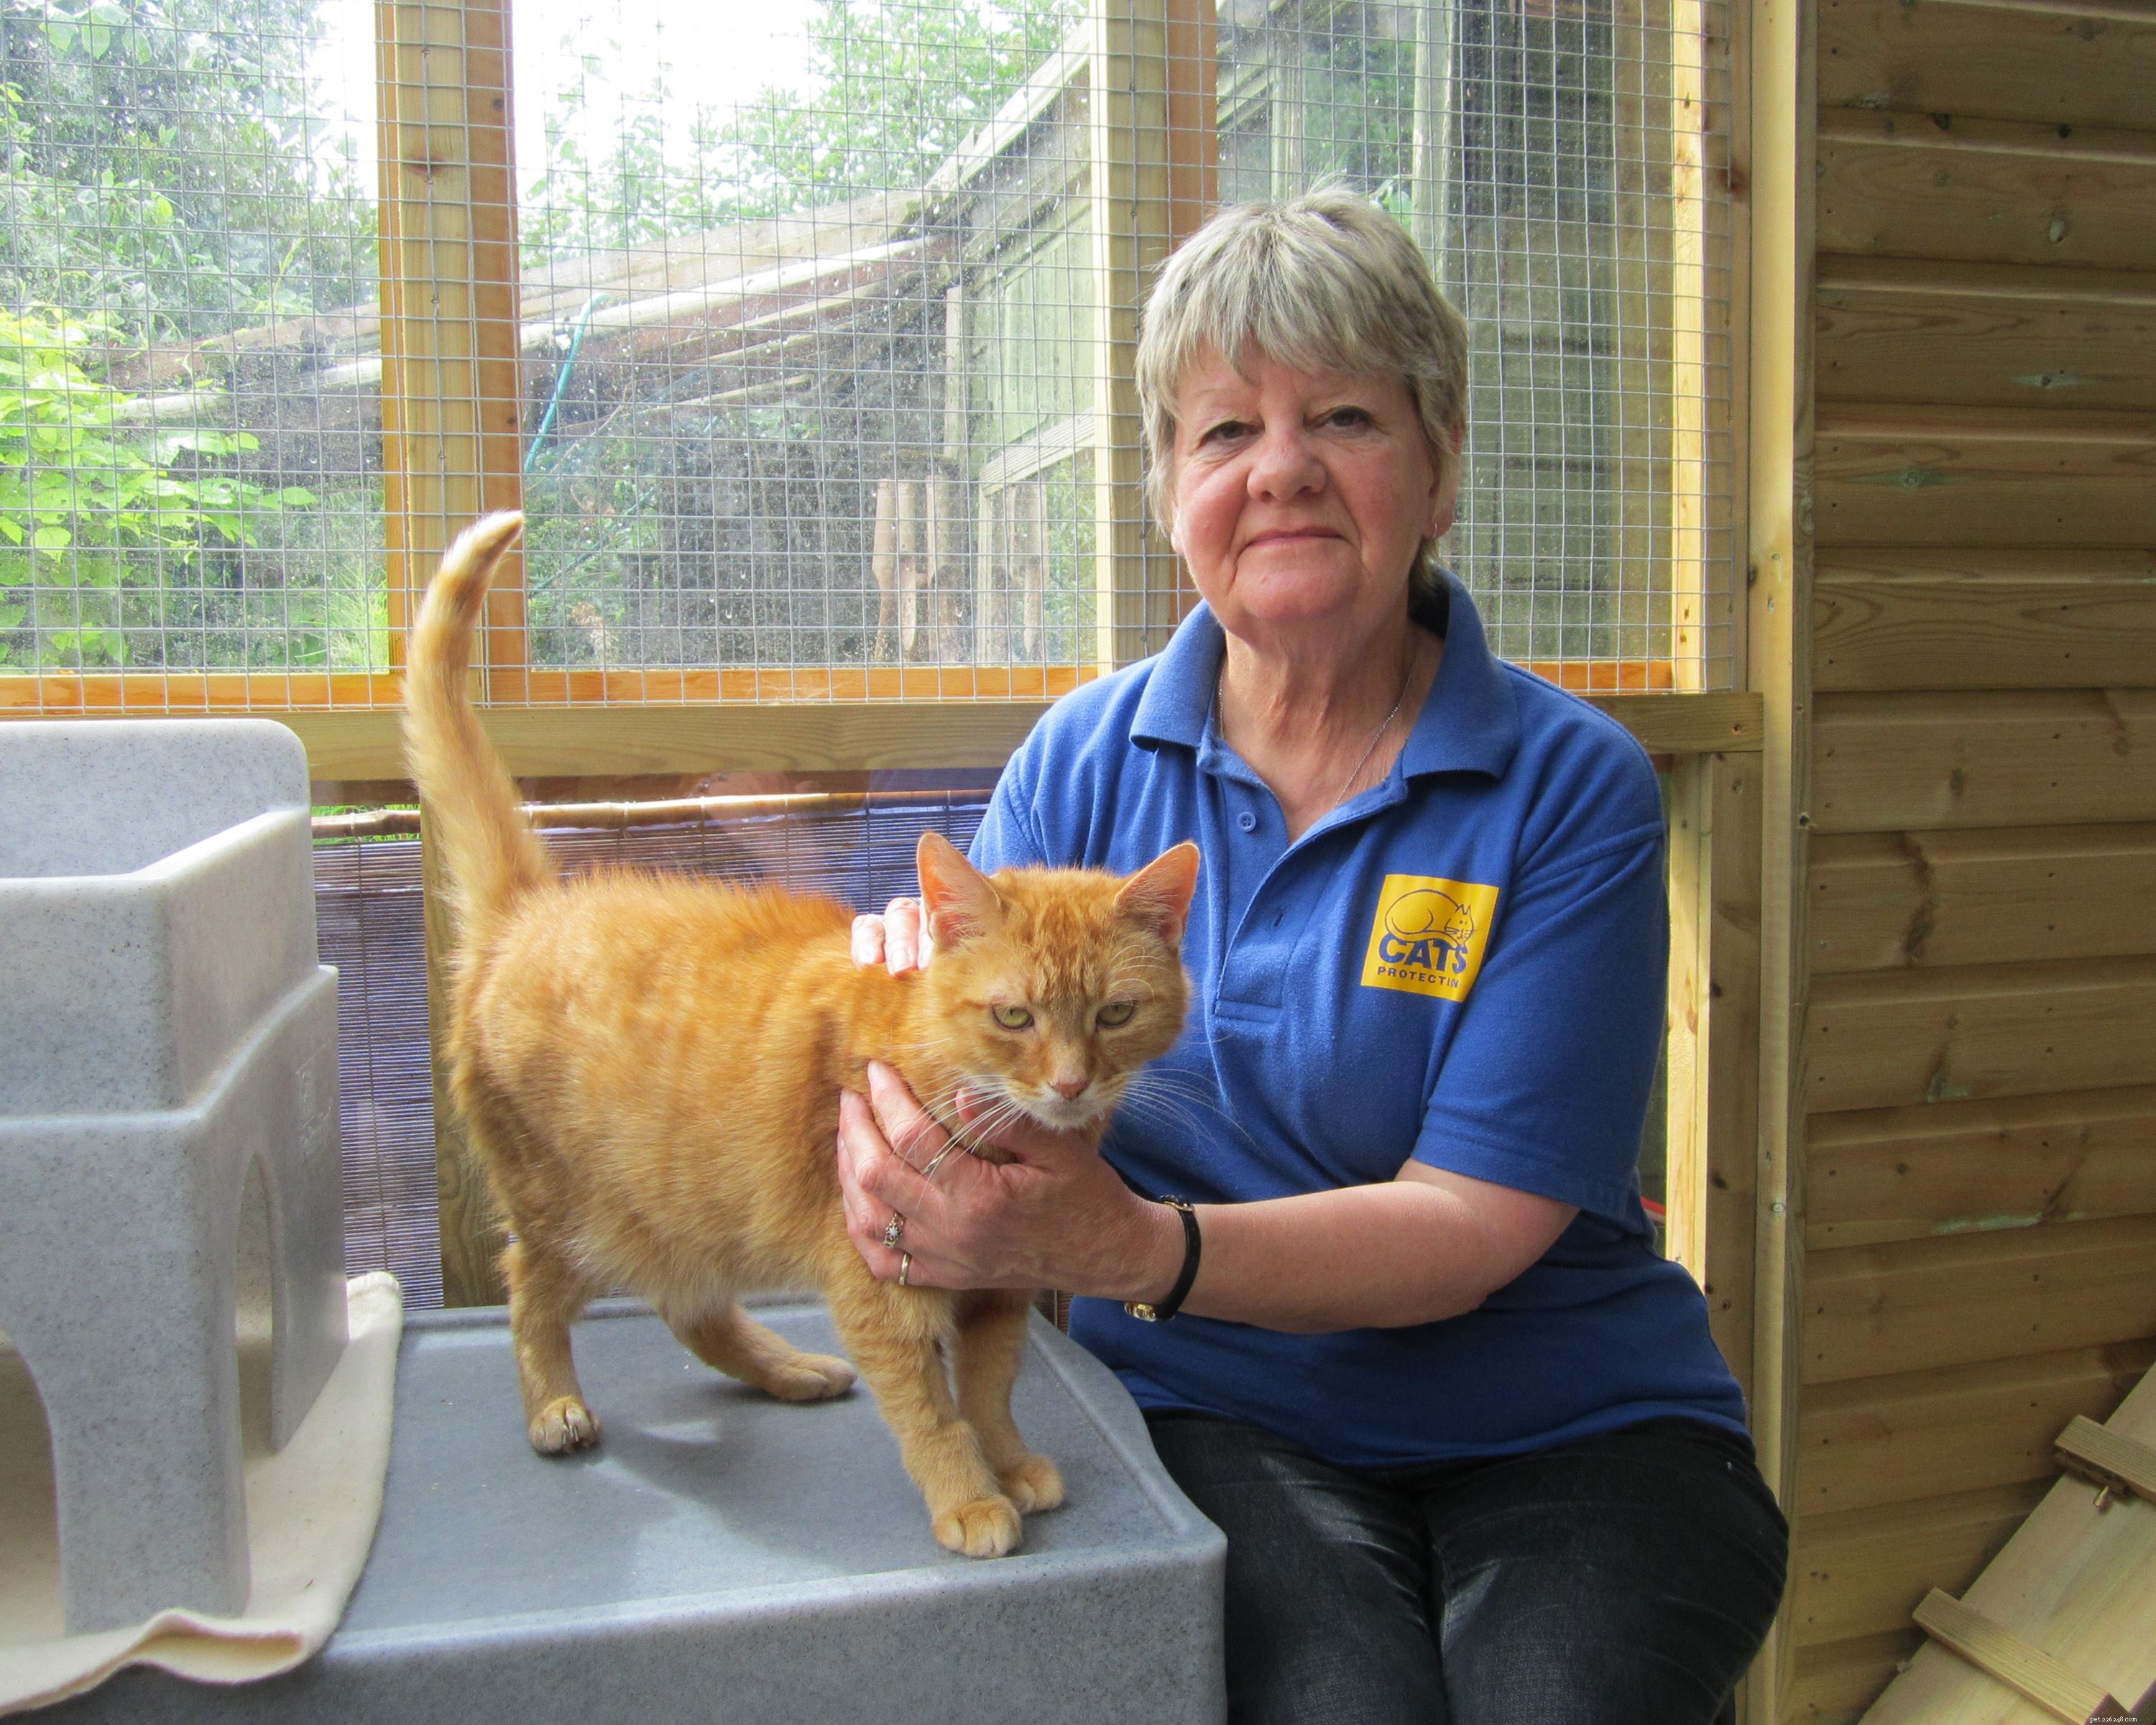 도로시 하이먼(Dorothy Hyman)과 체리 로버그(Cherry Lorberg)는 둘 다 도싯(Dorset)에서 도움이 필요한 고양이를 위해 기금을 마련하기 위해 시속 110마일의 속도로 날개짓을 합니다. 